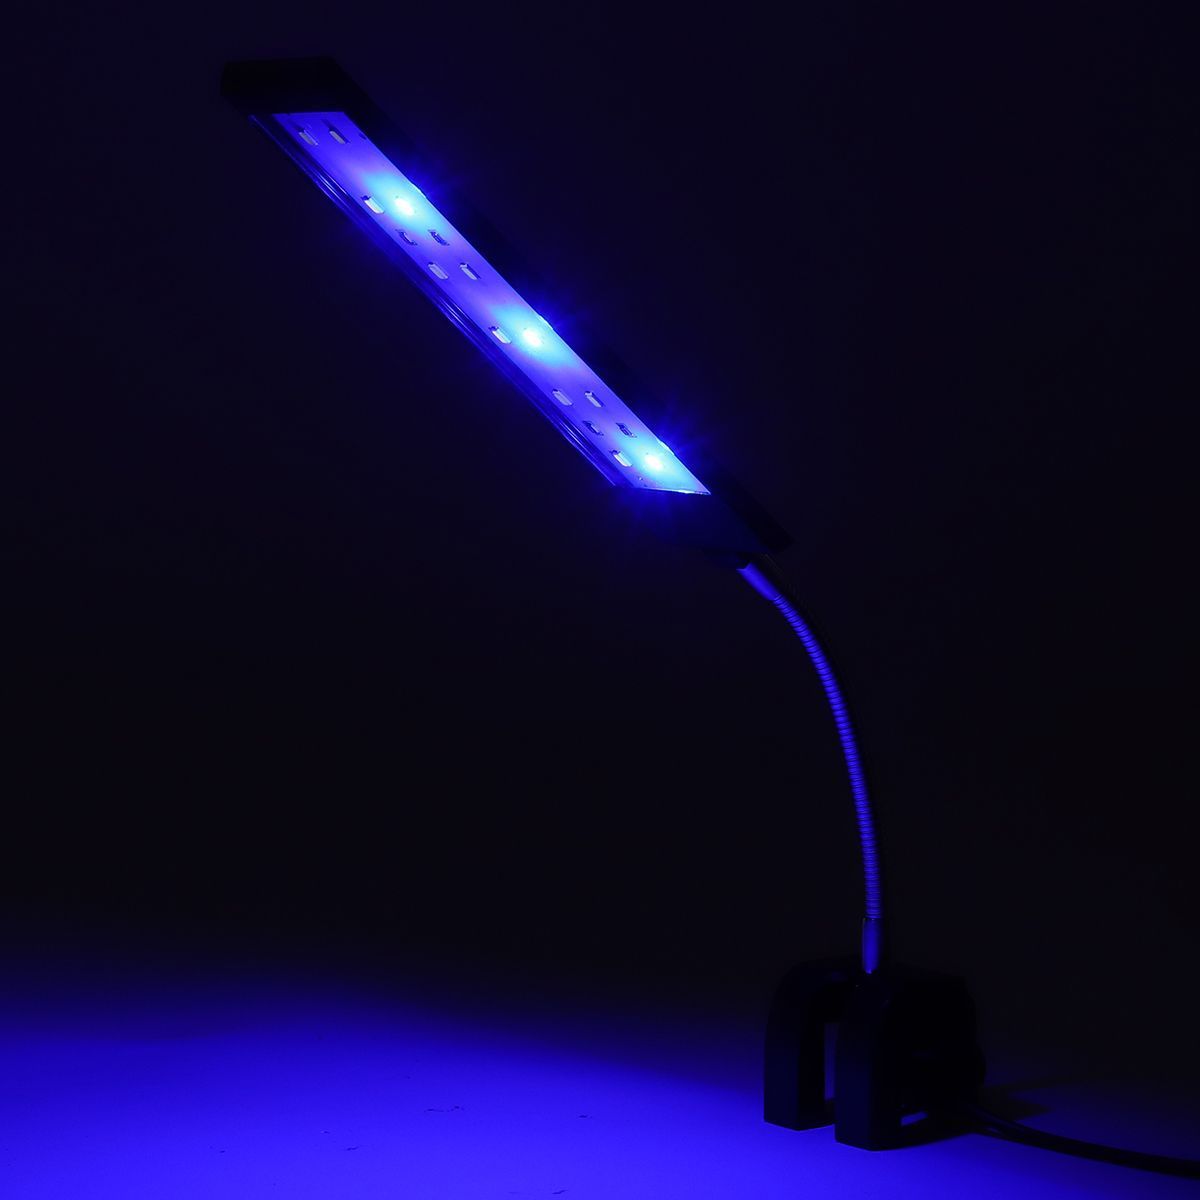 100-240V-7W-Clip-on-LED-Aquarium-Light-Fish-Tank-Decoration-Lighting-Lamp-with-White--Blue-LEDs-Touc-1640560